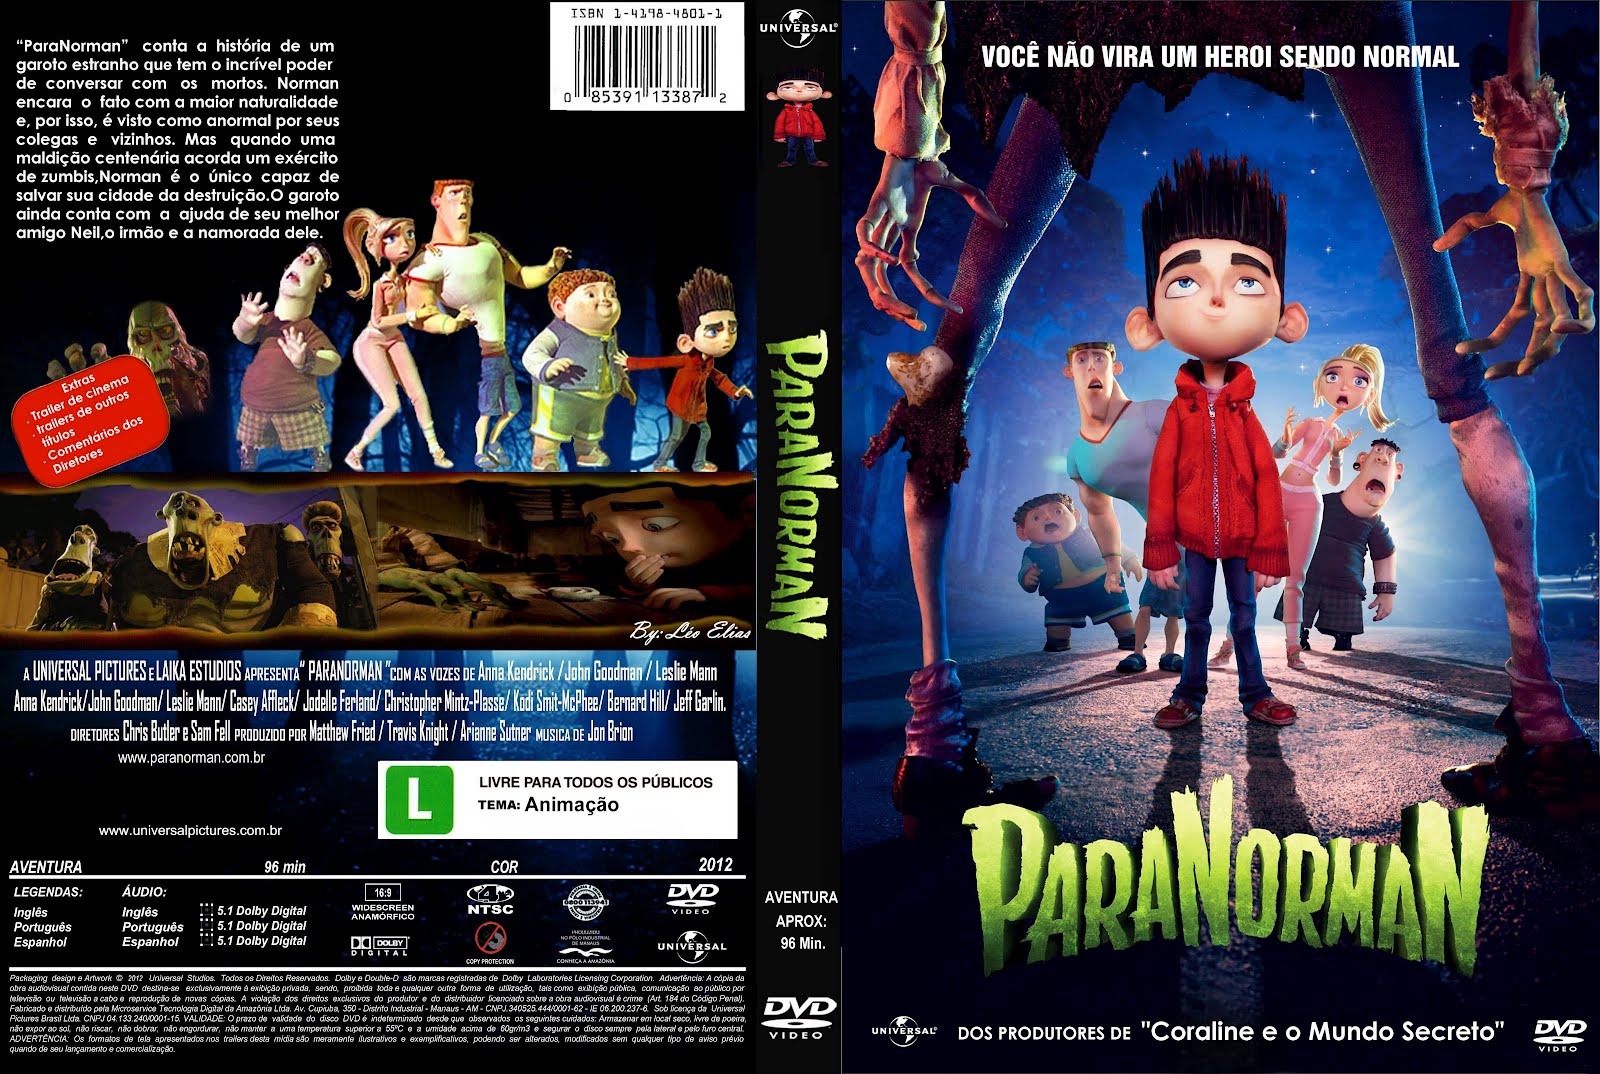 Capas Filmes Animação: Paranorman1600 x 1074